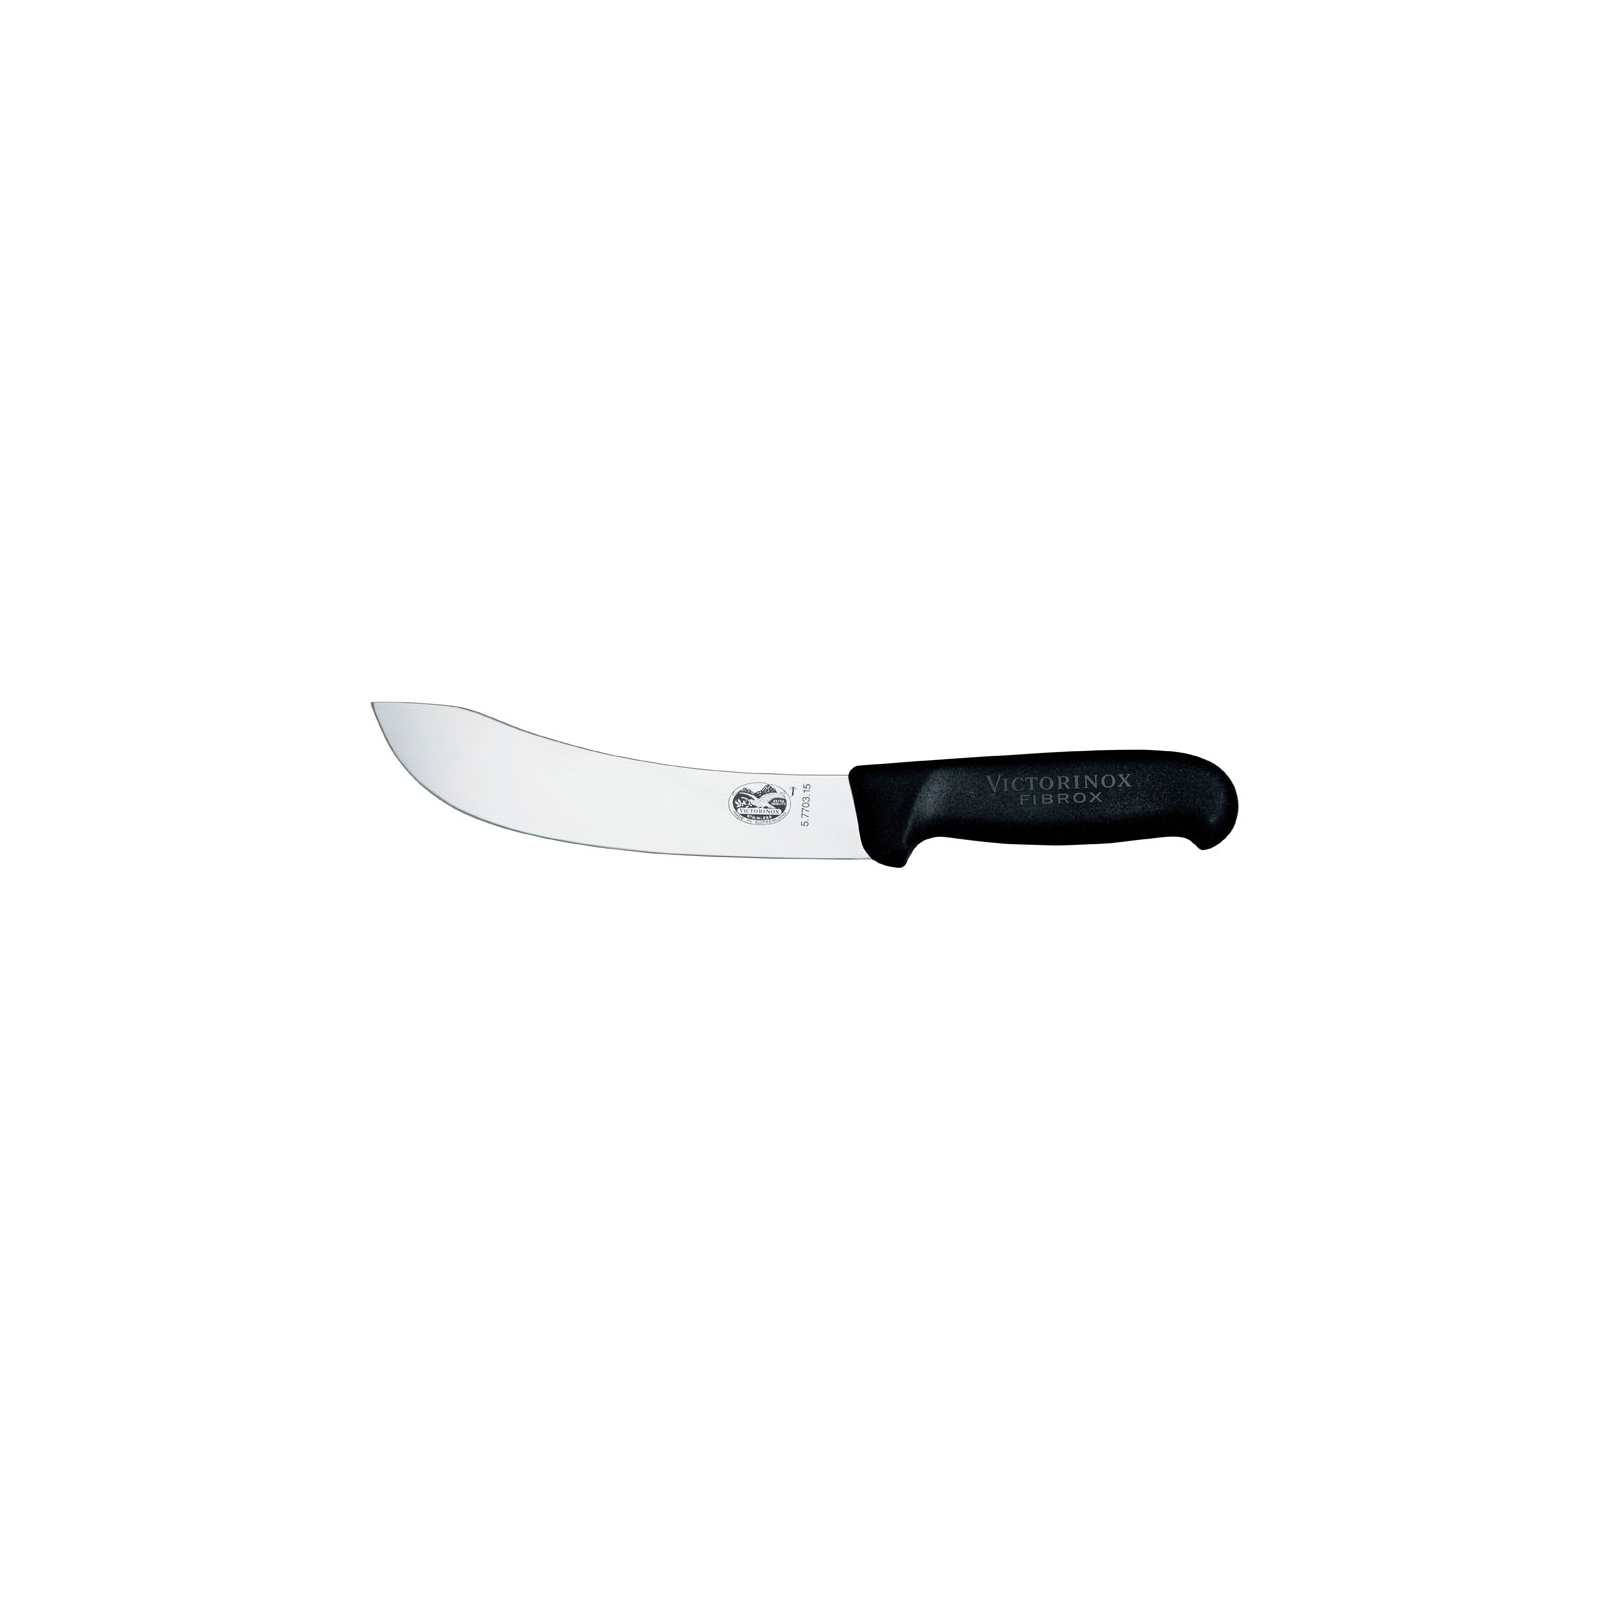 Кухонный нож Victorinox Fibrox разделочный 15 см, черный (5.7703.15)